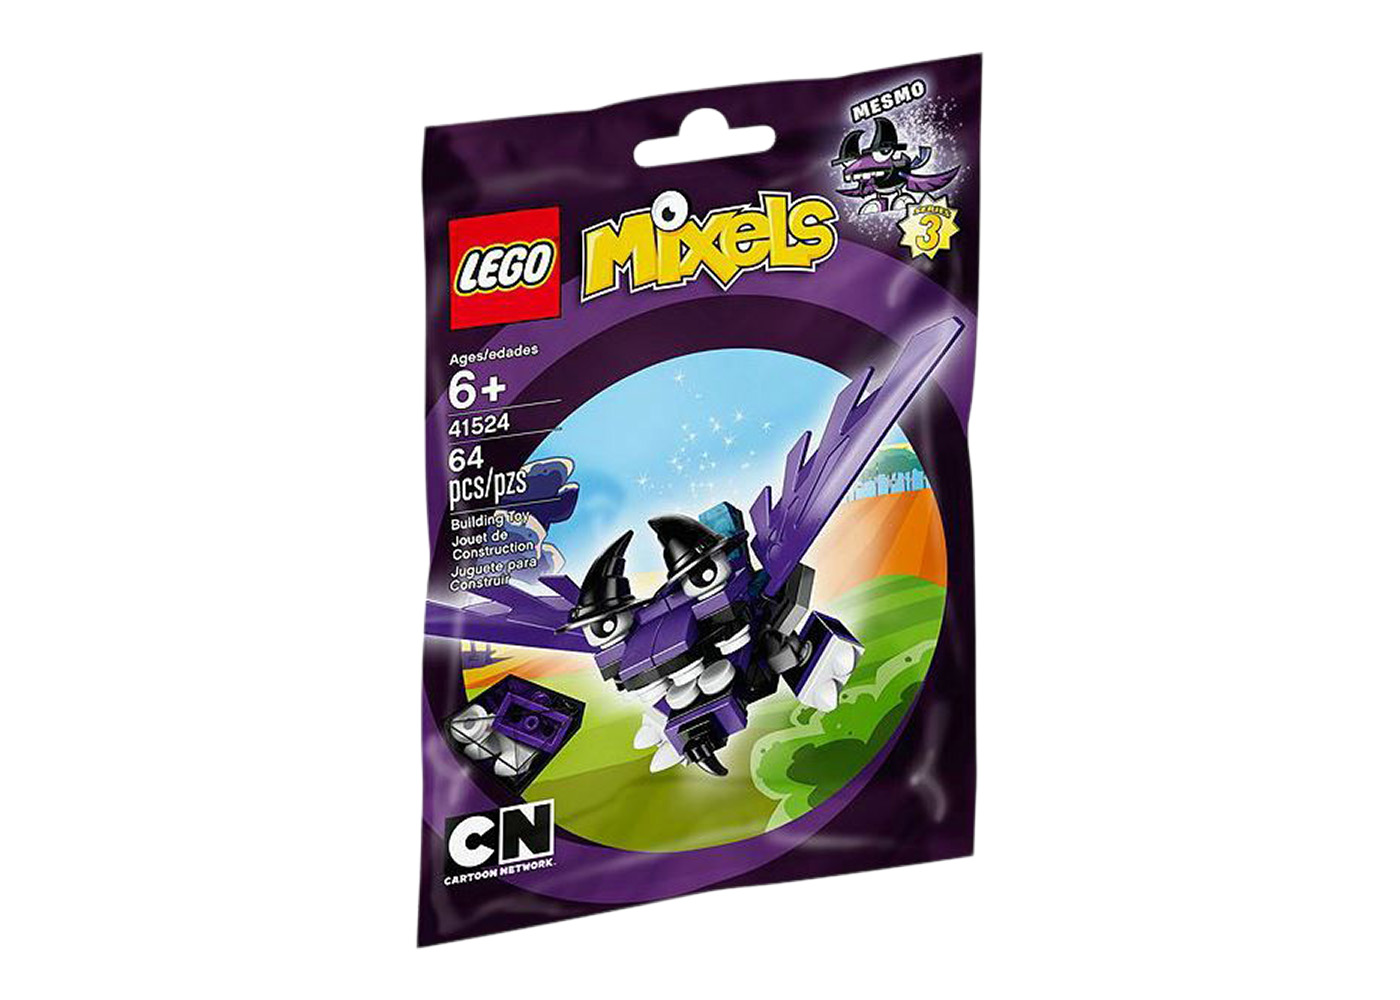 LEGO Mixels MESMO Set 41524 - US